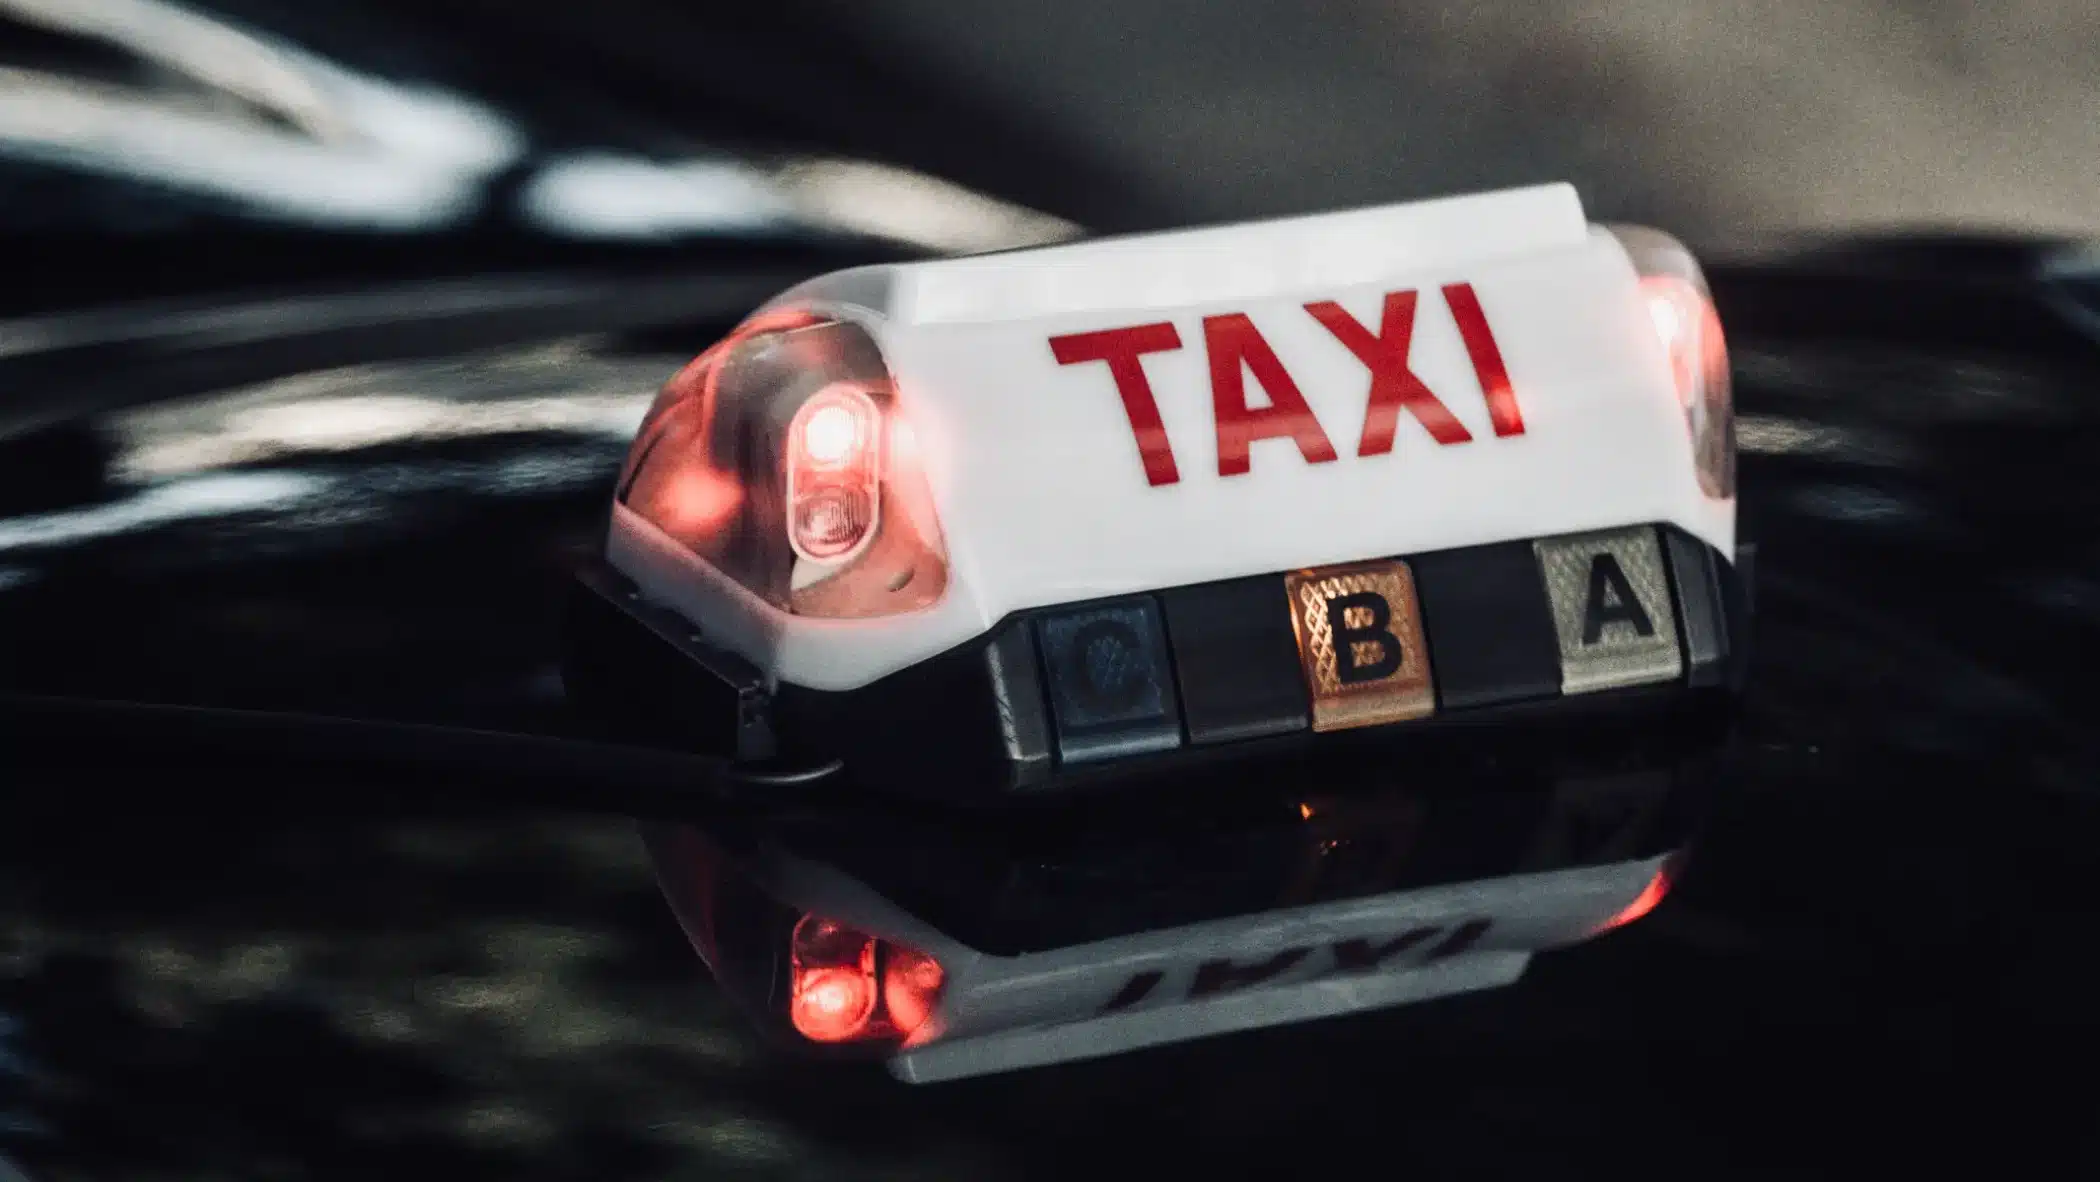 Taxi autonomo: la rivoluzione del trasporto senza autista